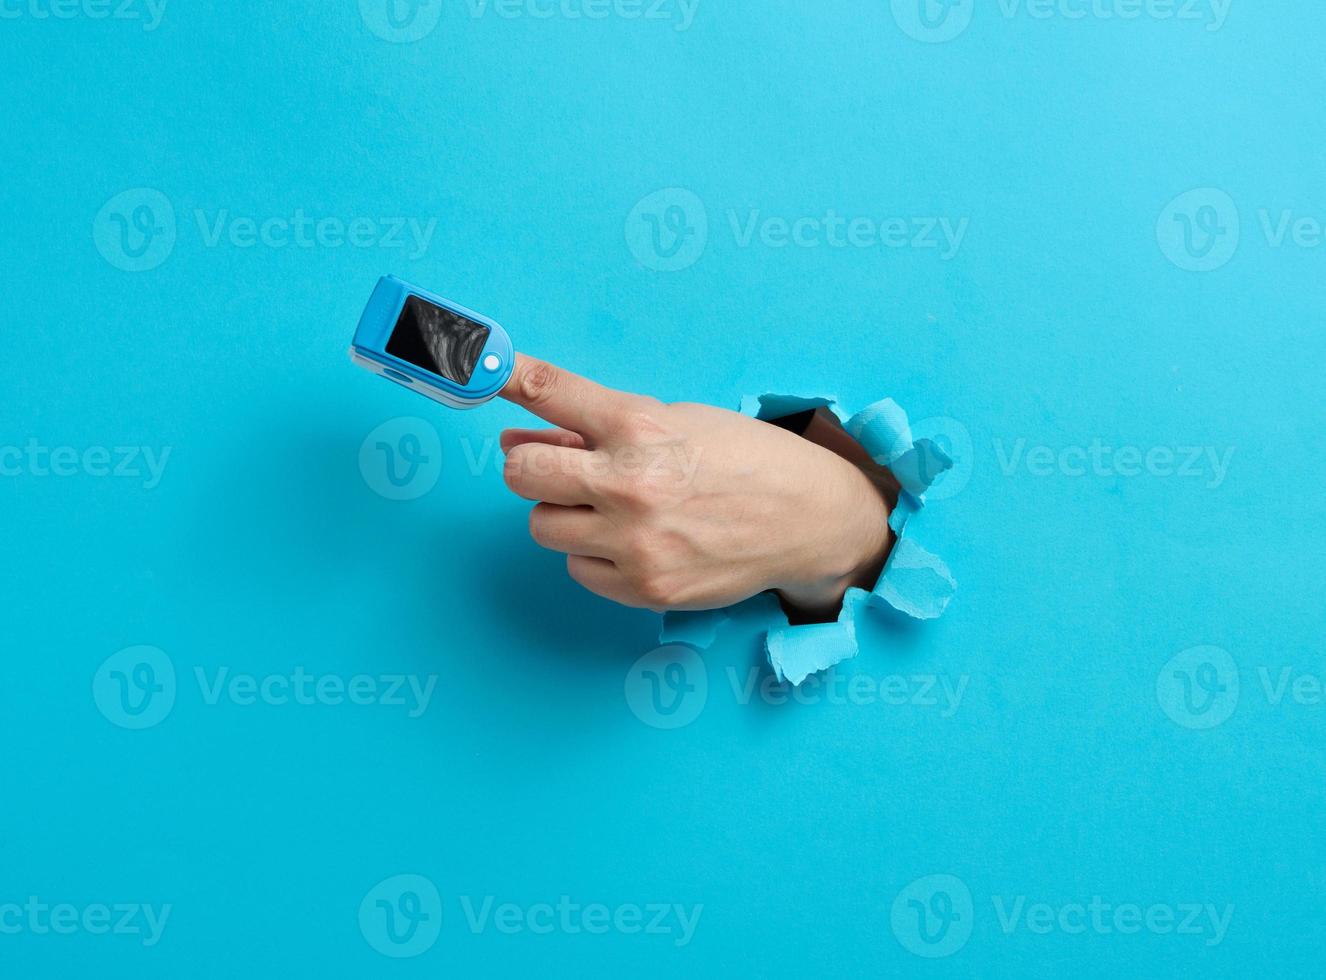 een oximeter voor meten zuurstof in de bloed is versleten Aan de inhoudsopgave vinger, een deel van de hand- is plakken uit van een gescheurd gat in de blauw papier foto